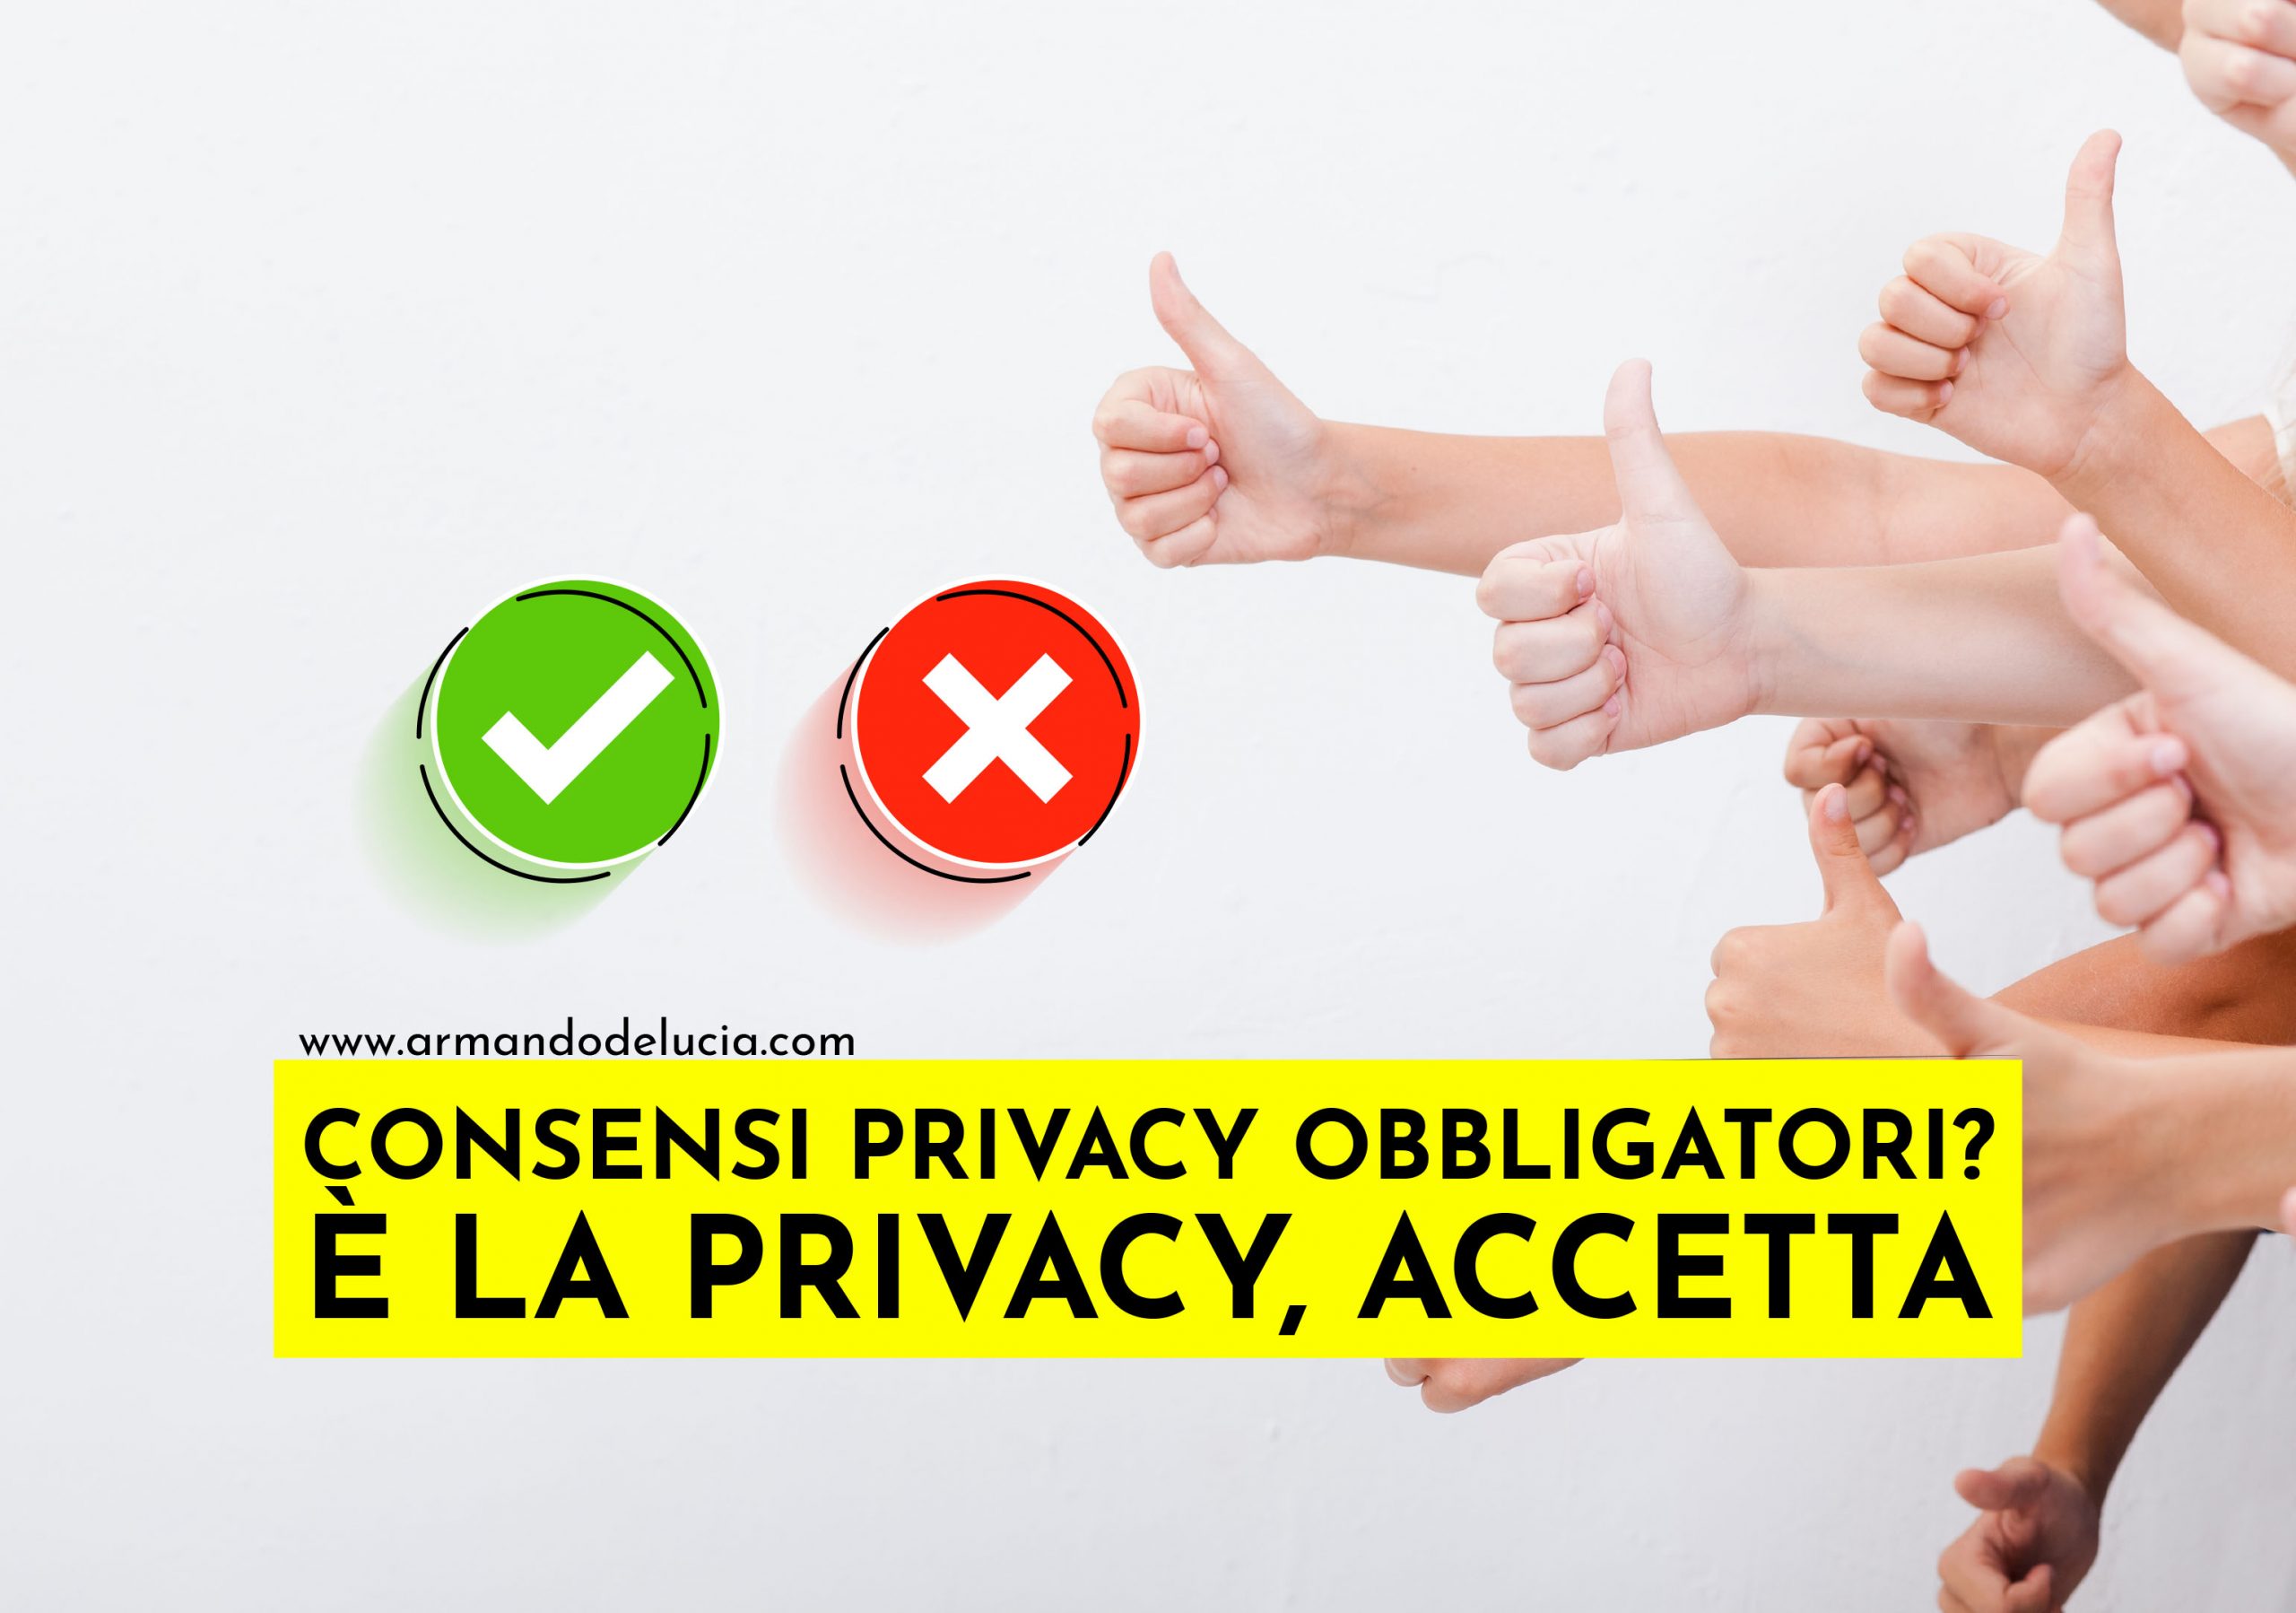 Consensi privacy sono veramente sempre obbligatori?